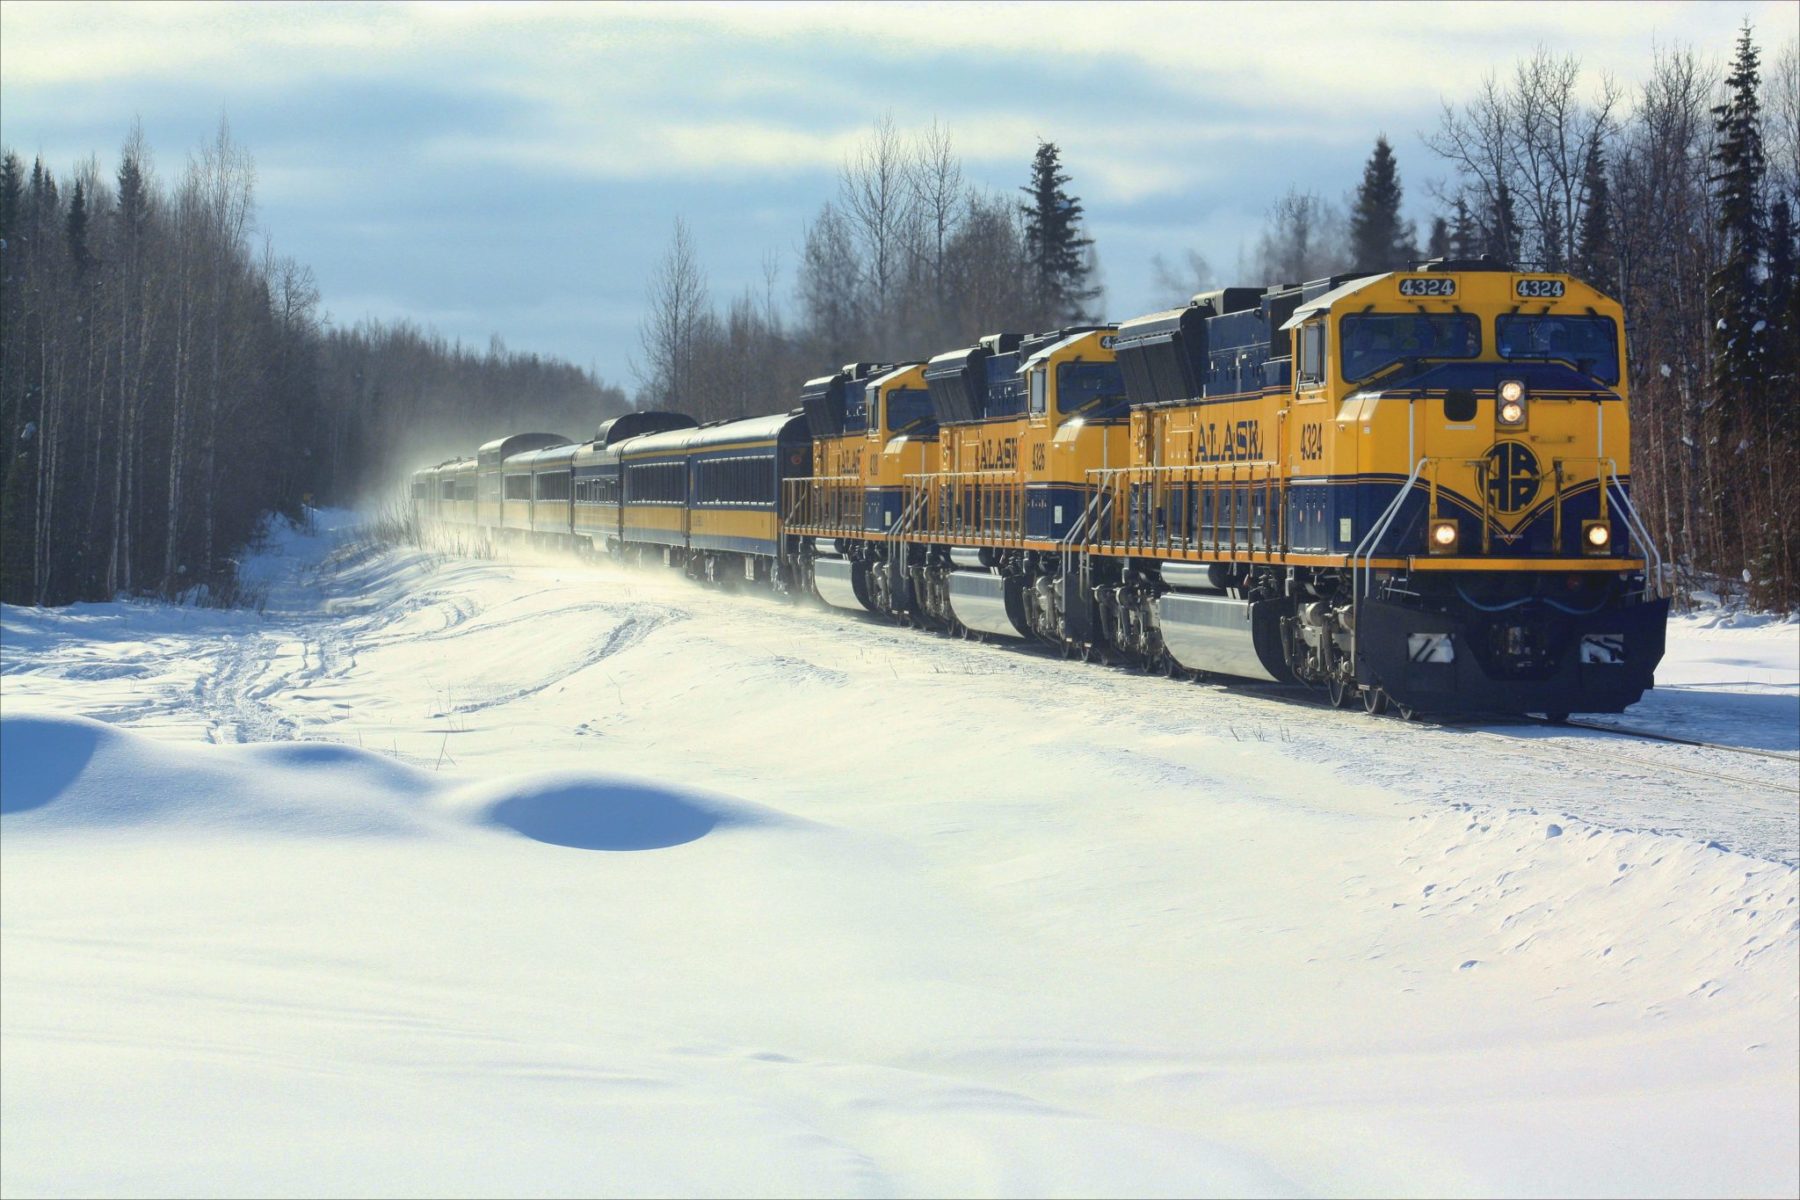 Alaska Train Tour Anchorage to Fairbanks Fall, Winter Tour